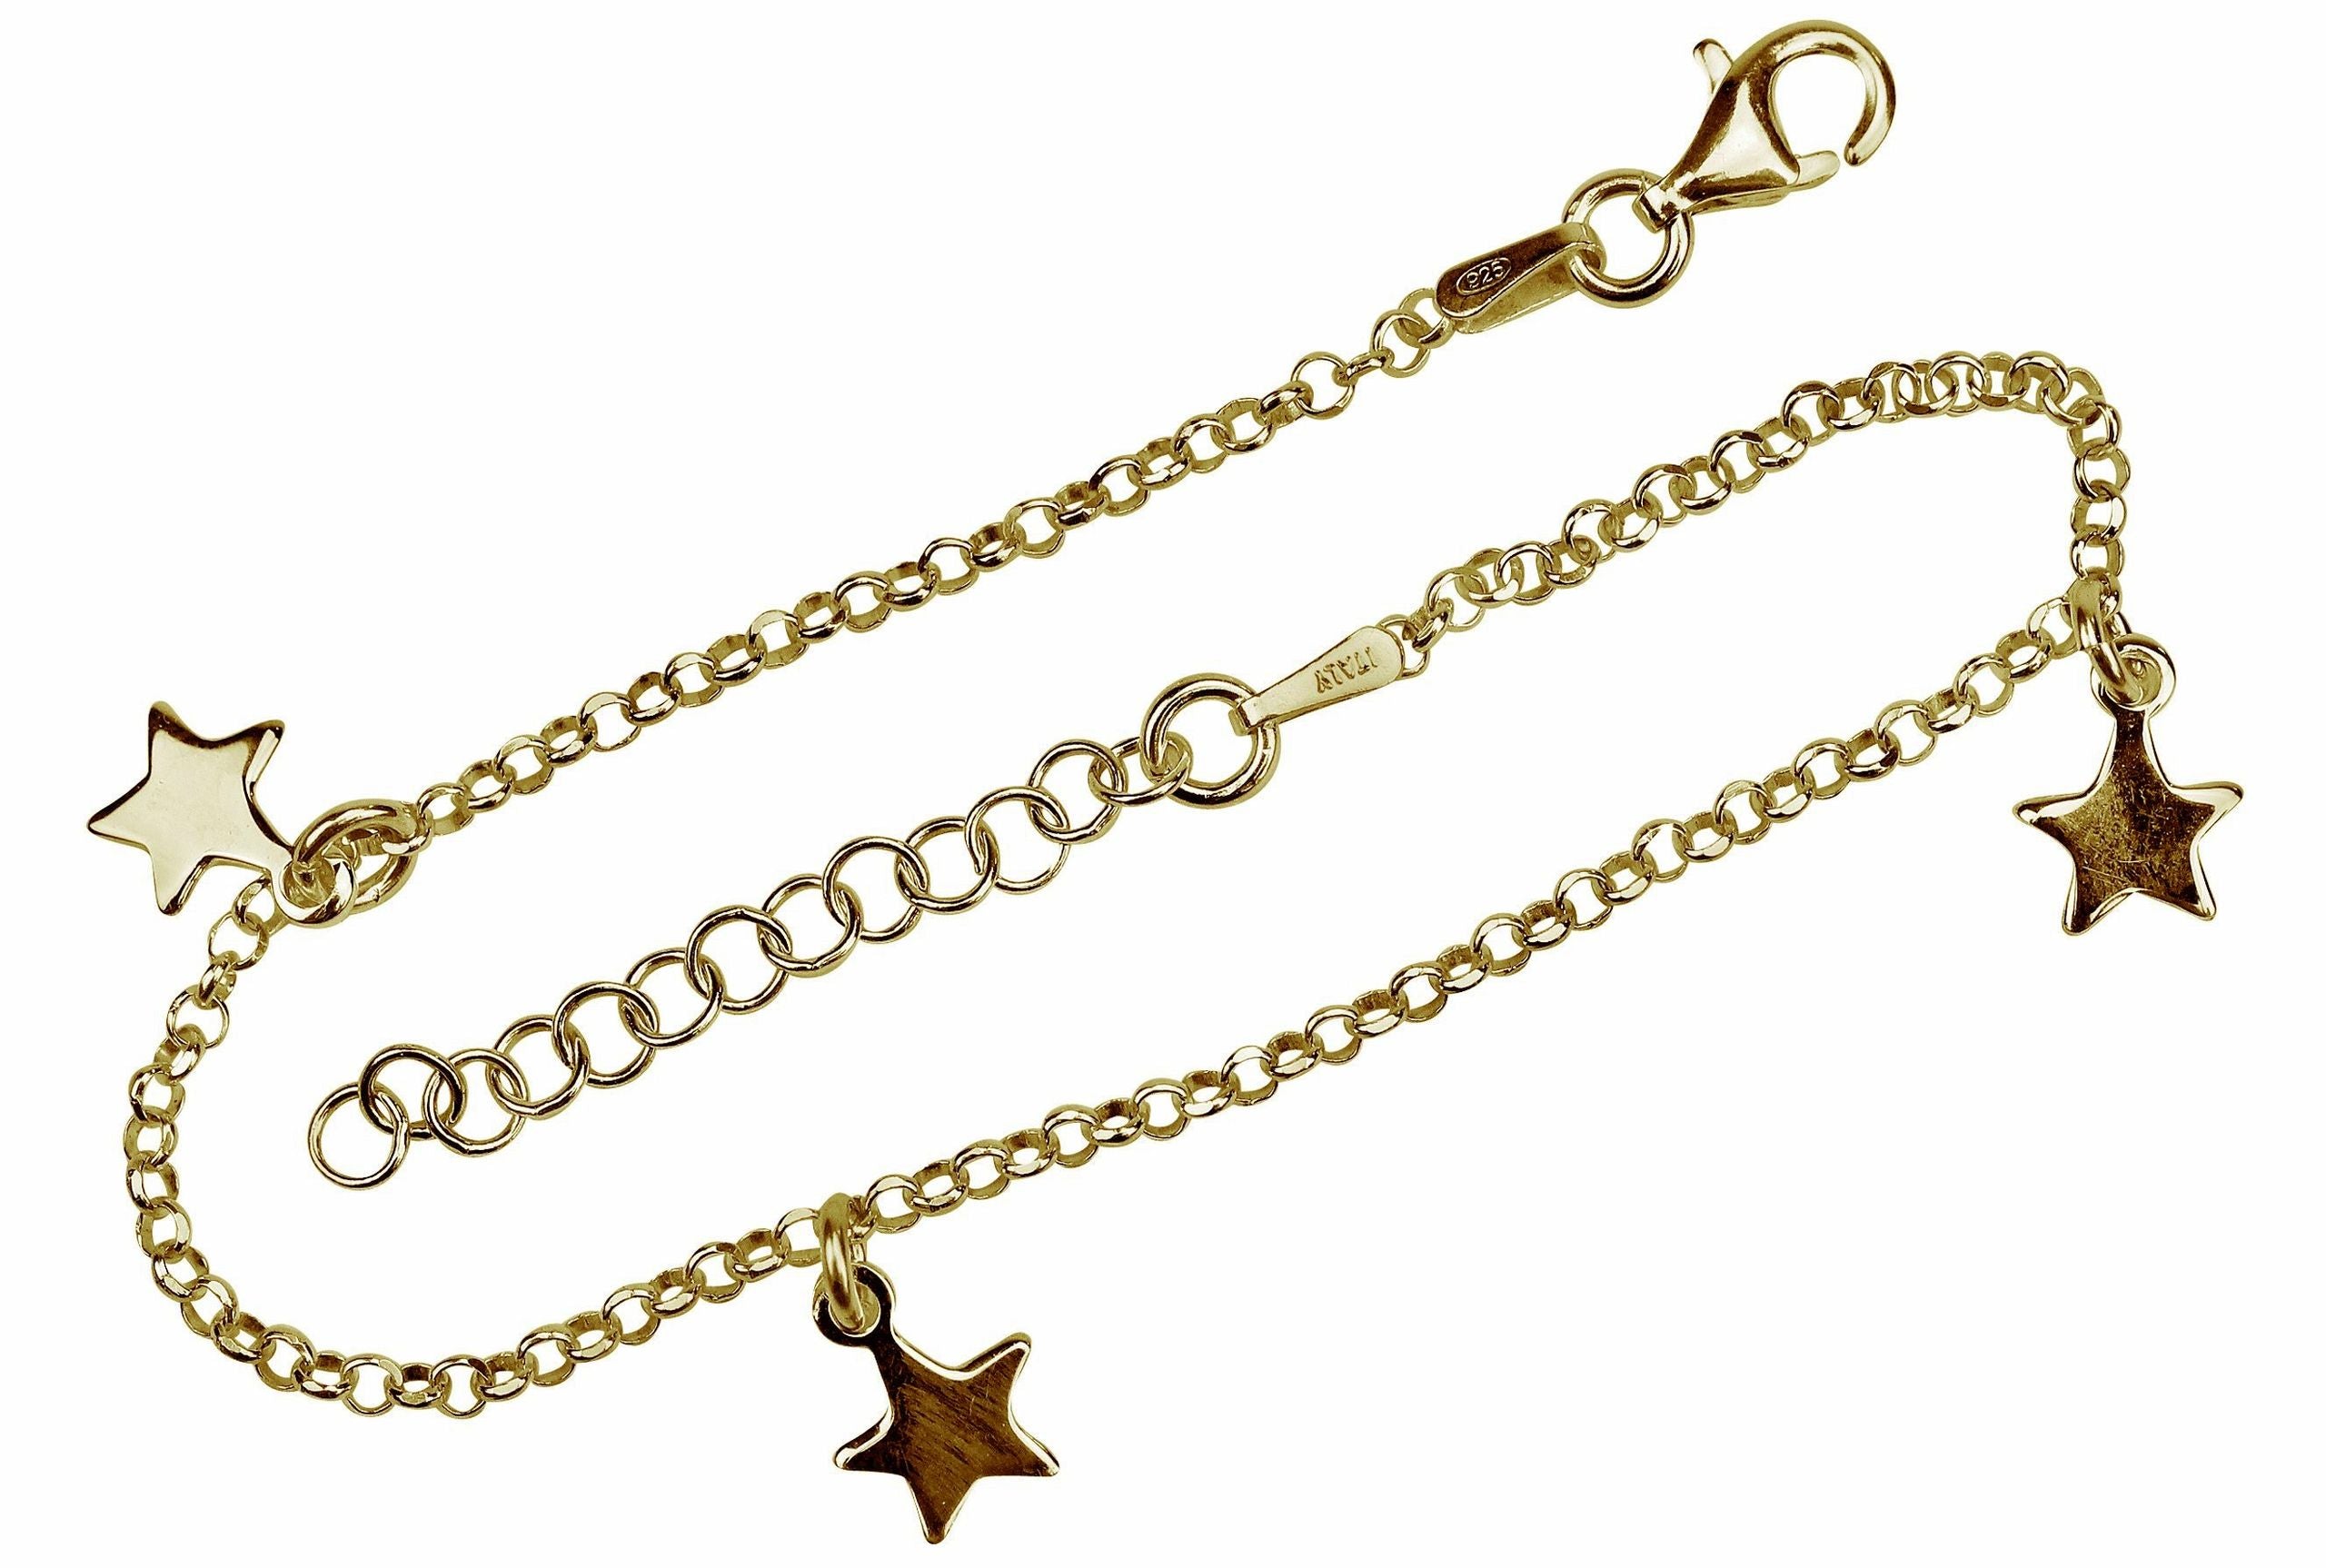 Ein Amband aus gold-plattiertem Silber aus einer feinen Kette und drei Sternen als Armband.